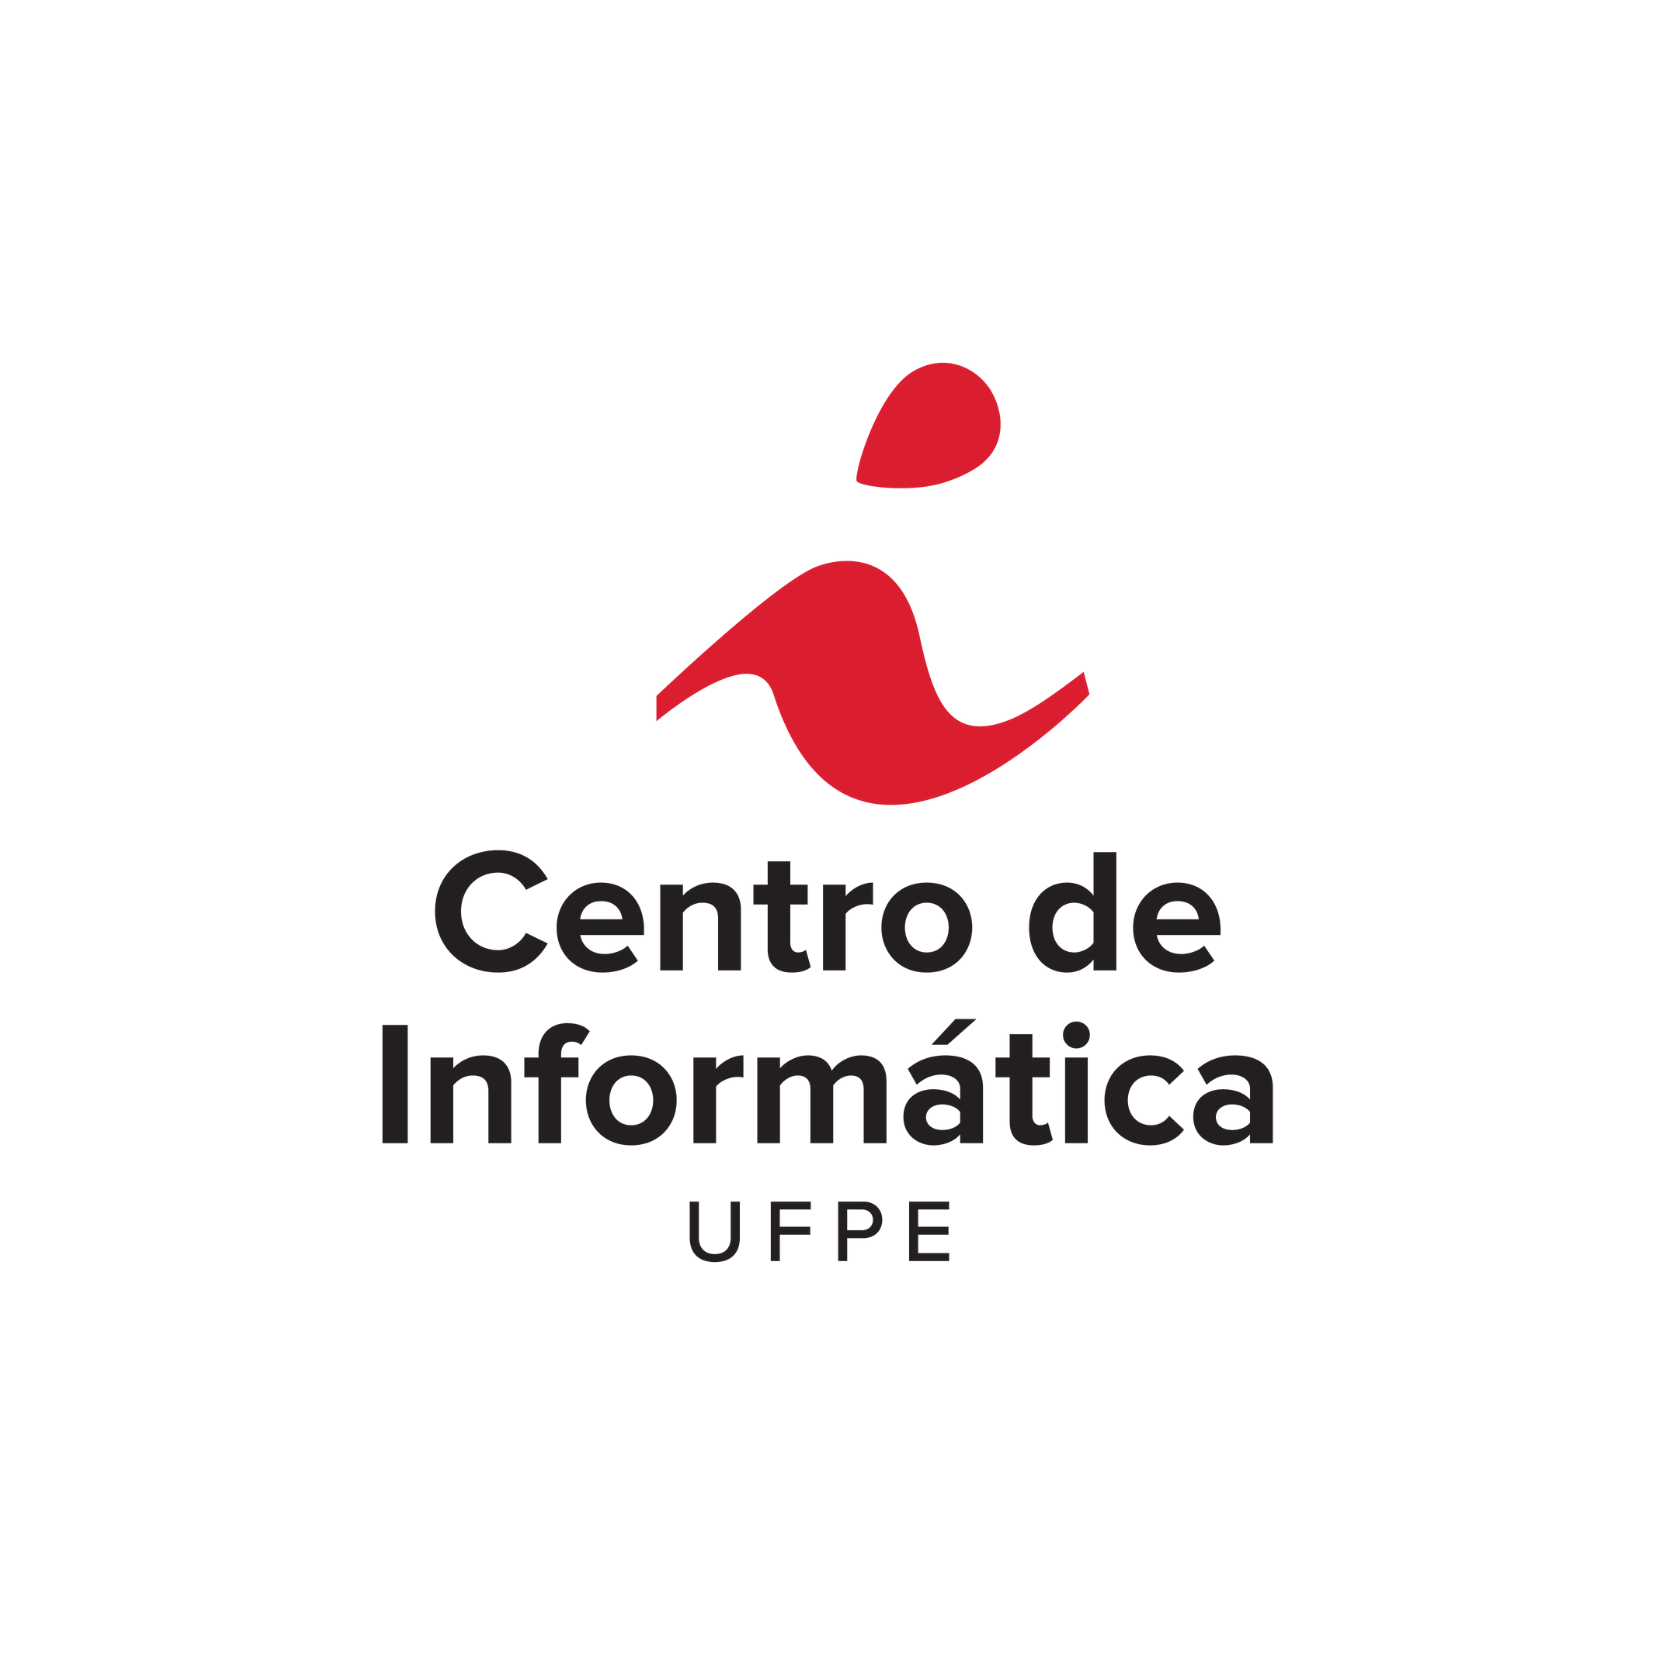 Centro de Informática da UFPE